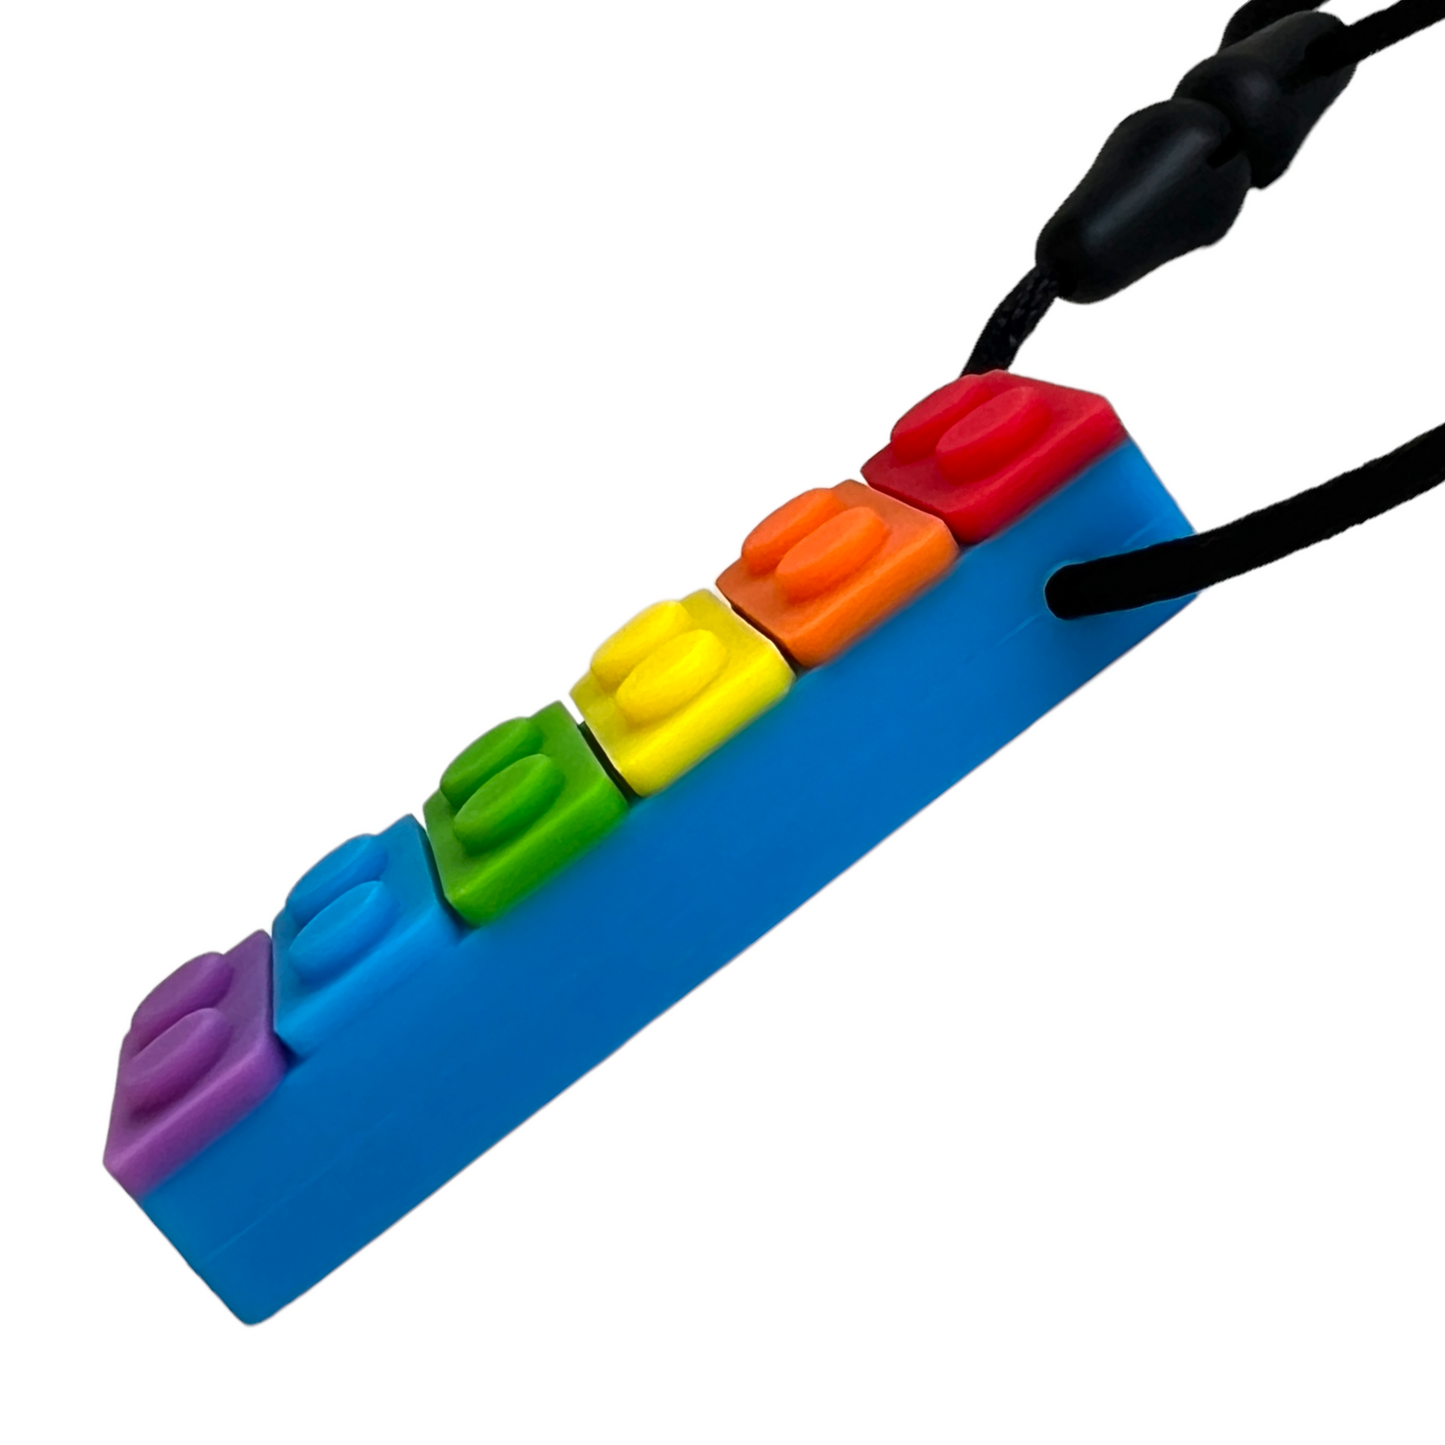 Lego Sensory Necklace